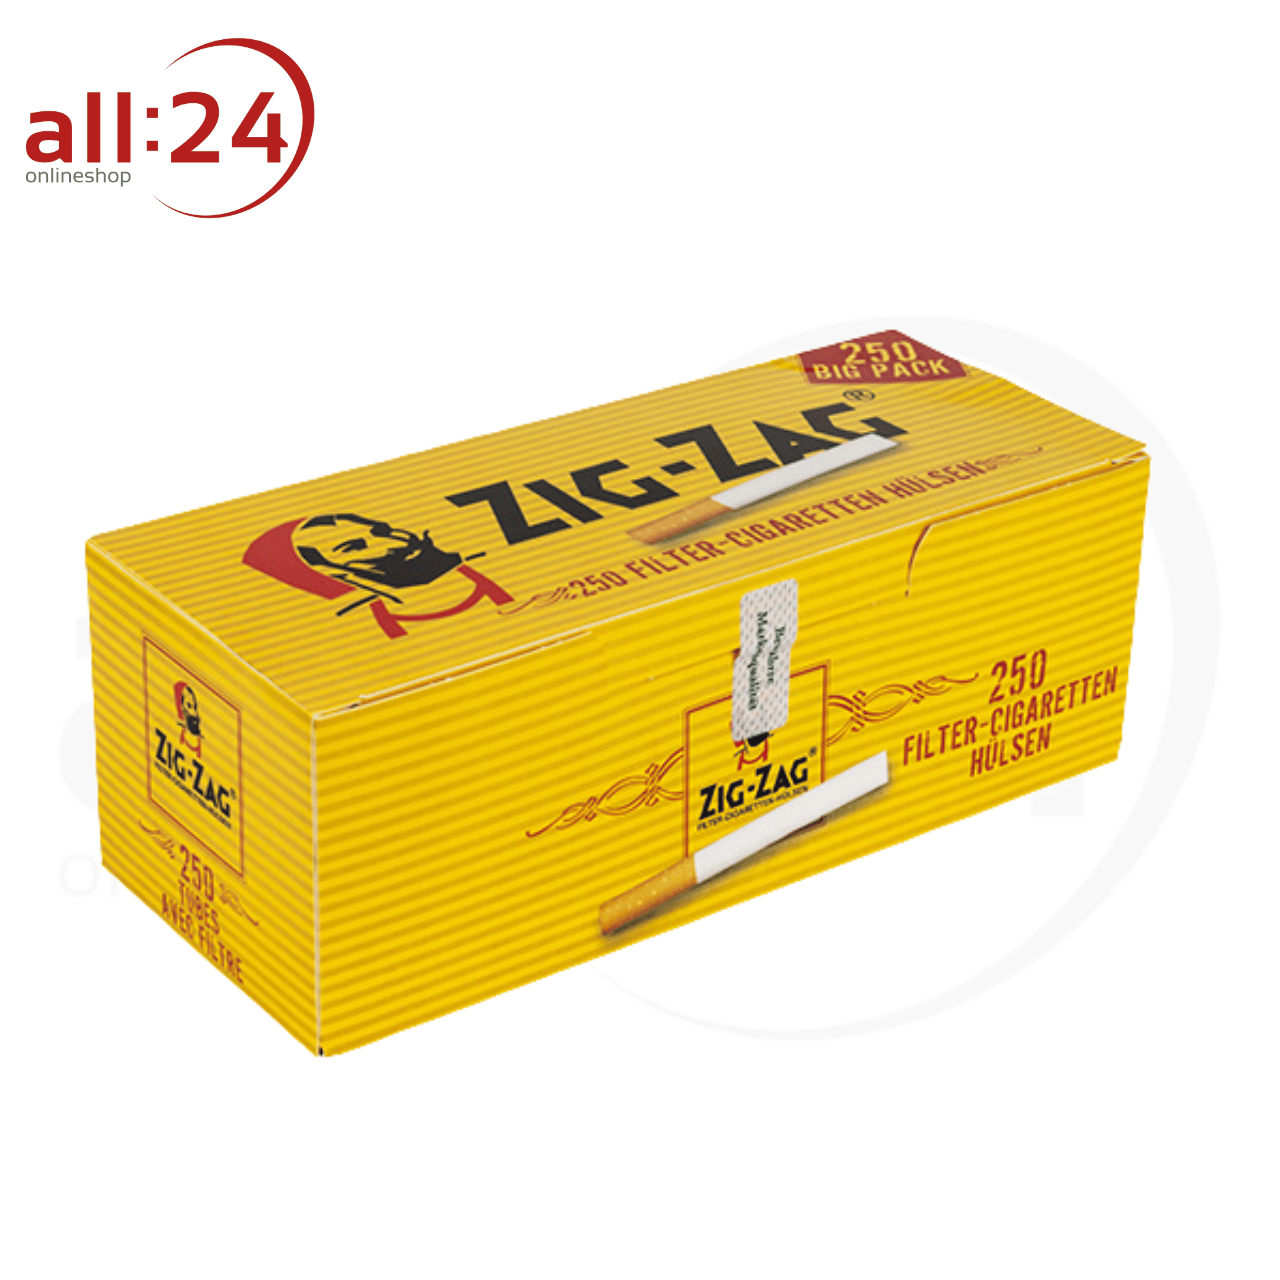 ZIG ZAG Filterhülsen - 1.000 Stück in 4 praktischen Packungen à 250 Stück 